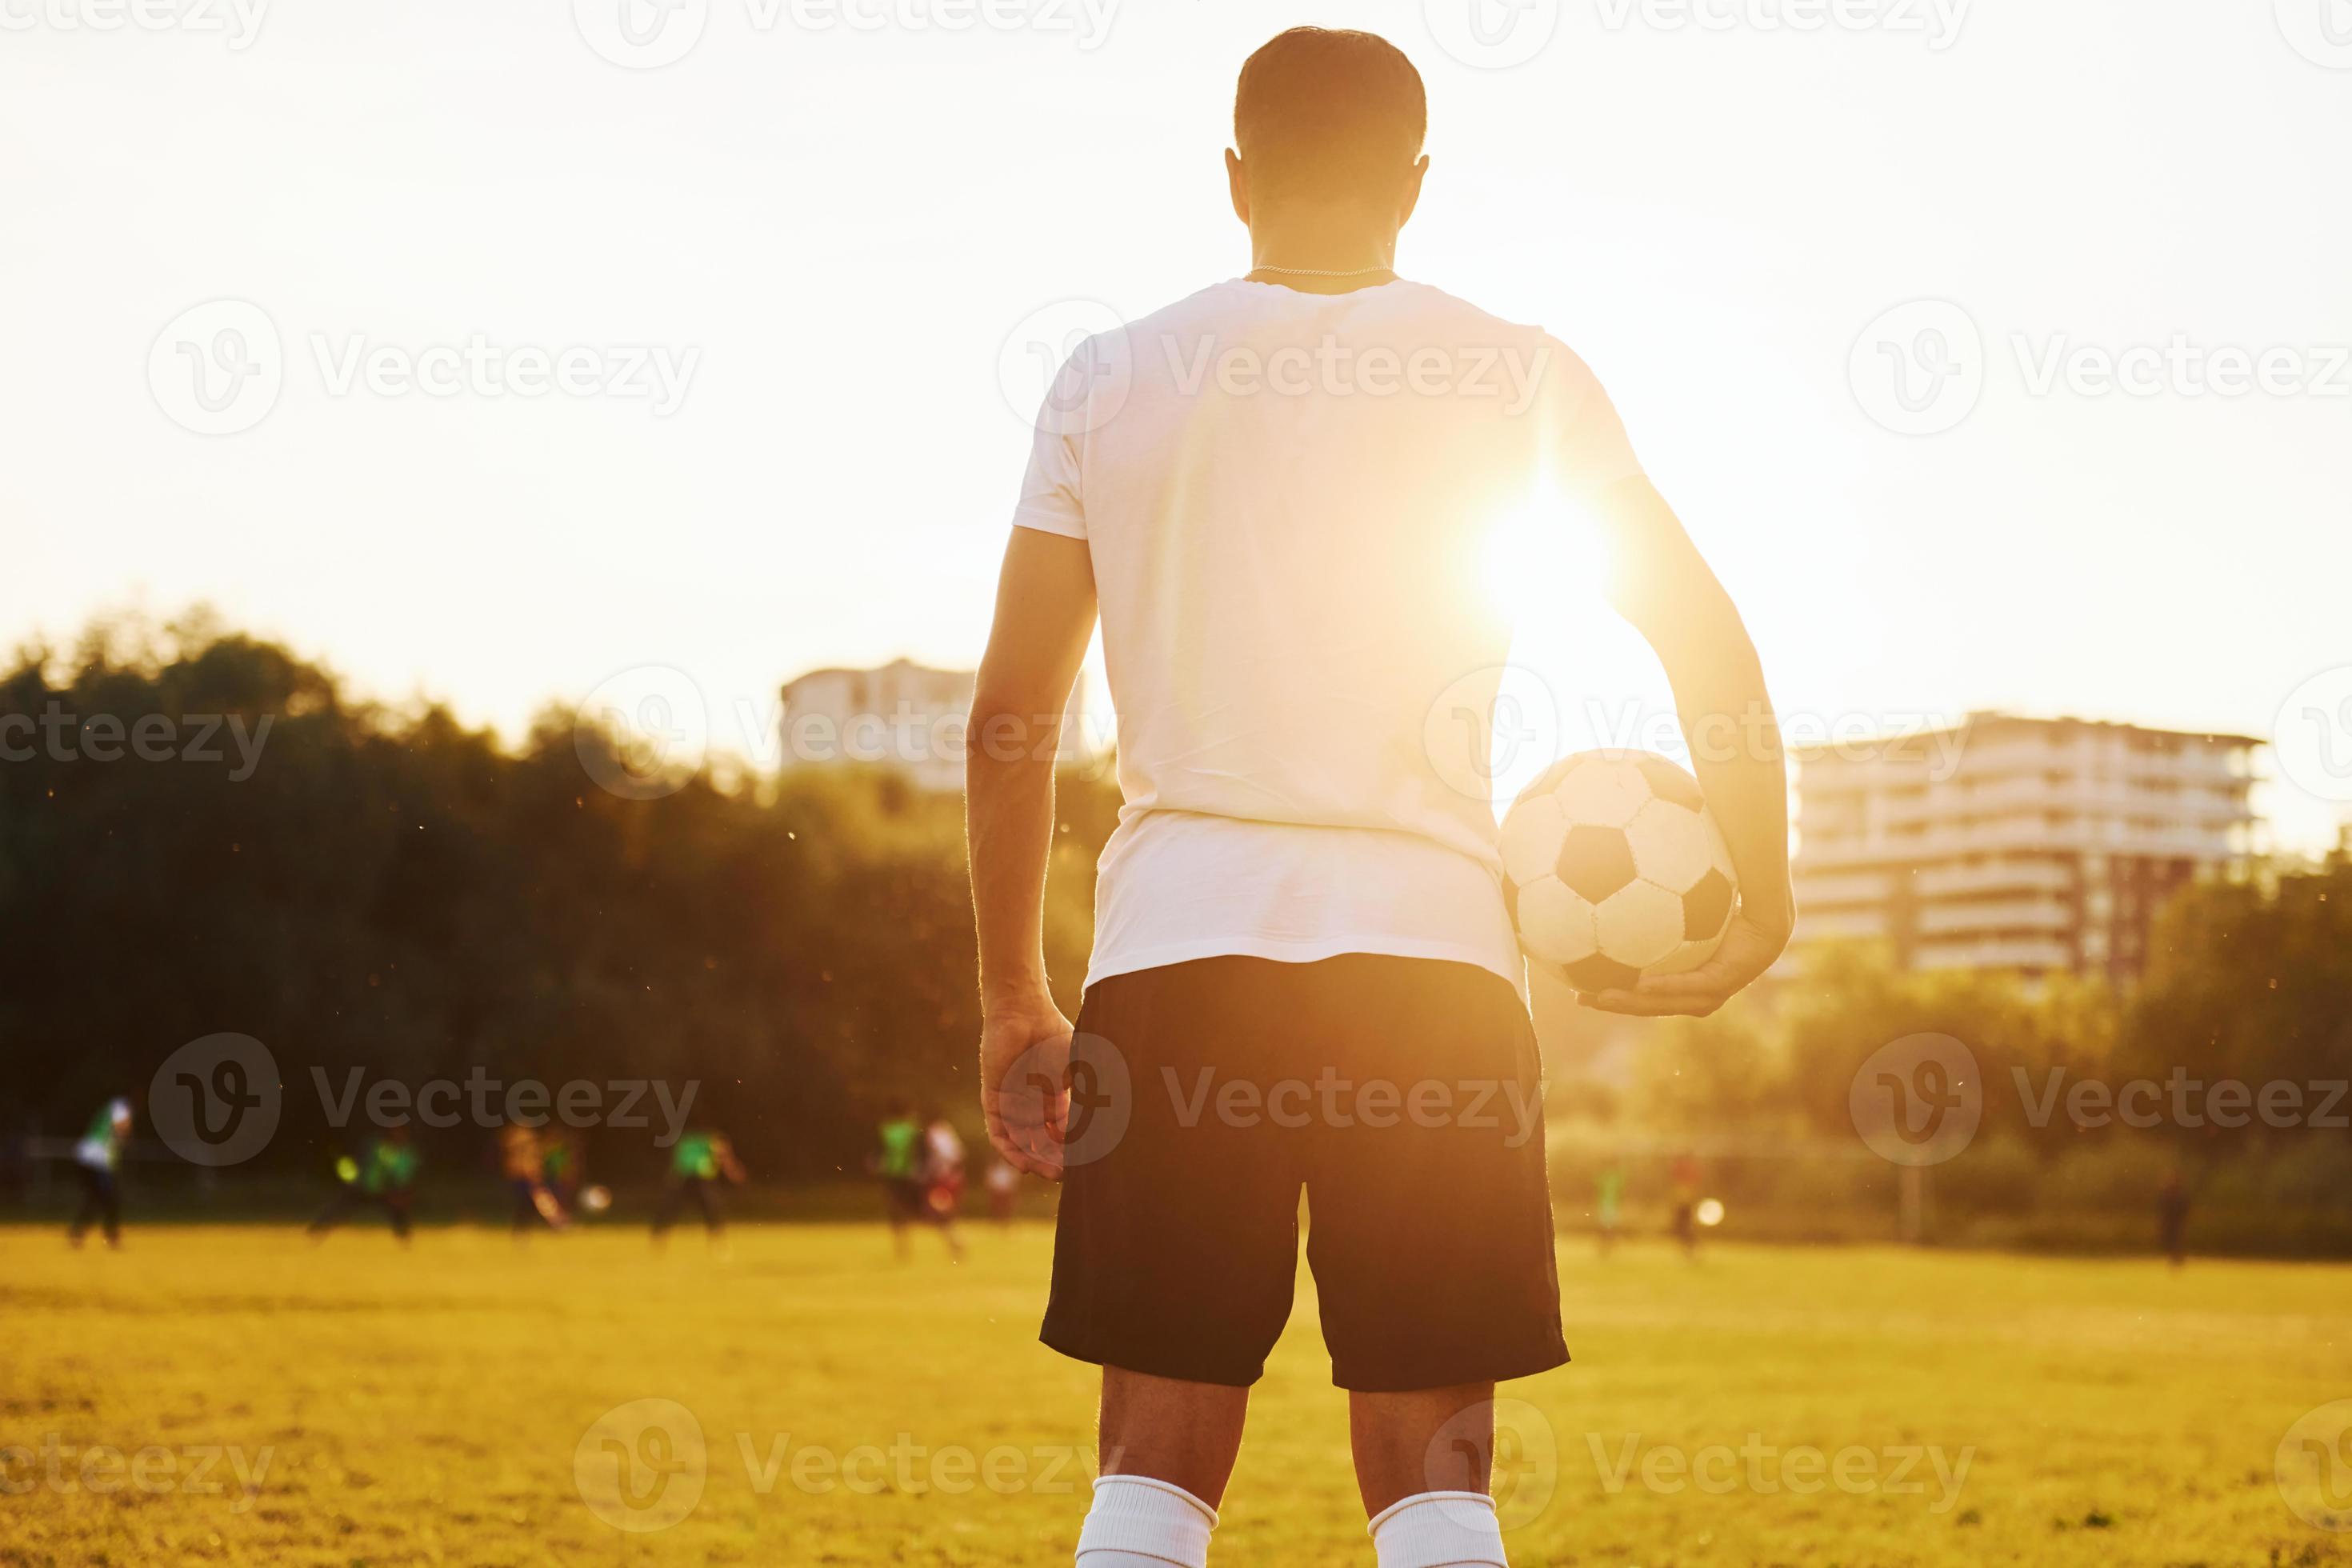 Esporte, treinamento de futebol e pessoas - jogador de futebol jogando com  bola no campo